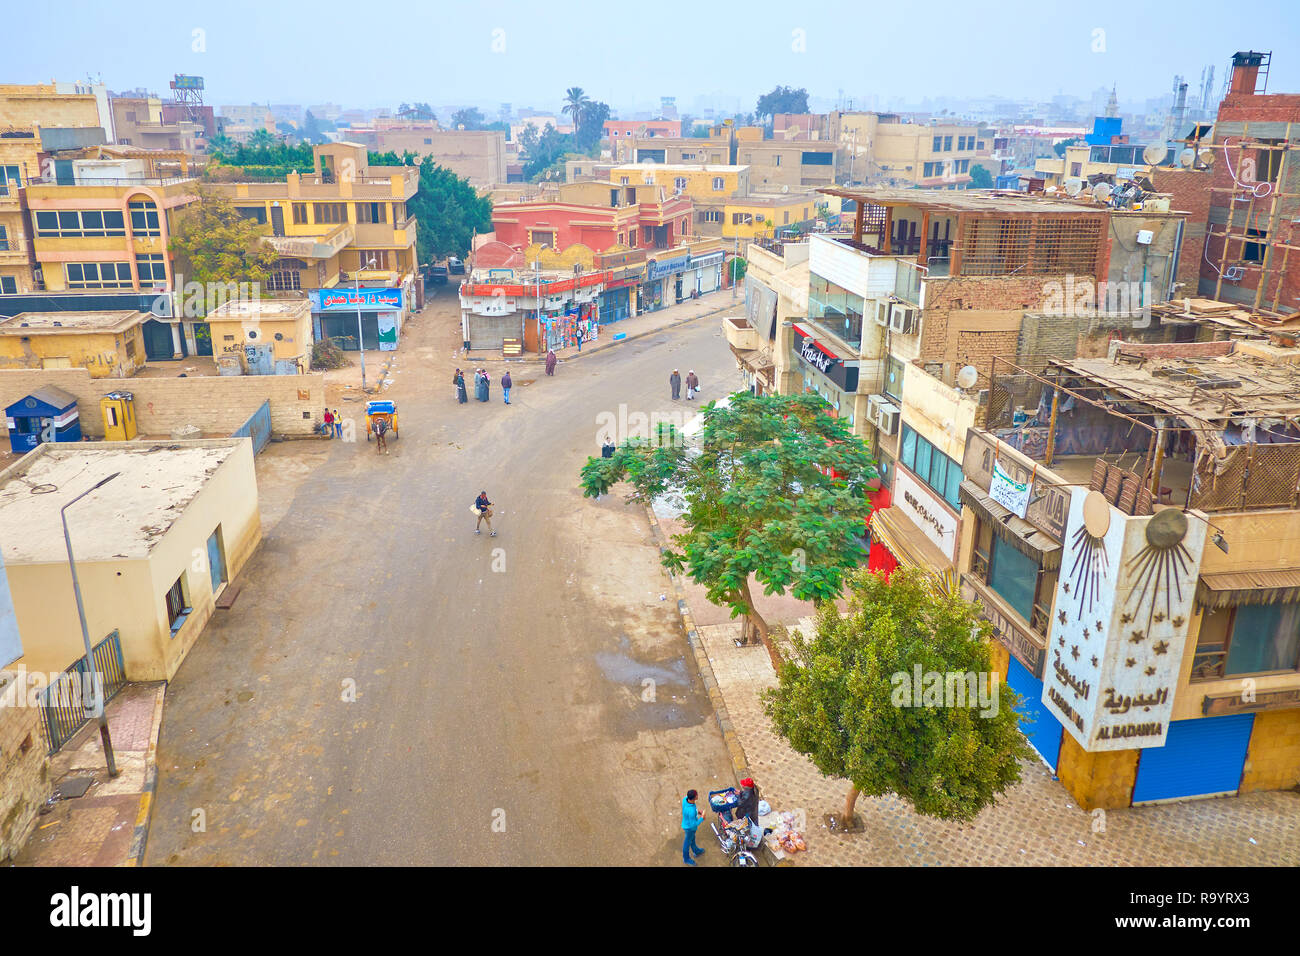 GIZA, Egitto - 20 dicembre 2017: La scena urbana della città di Giza con vecchie case residenziali, numerose attrattive turistiche caffè e cibo di strada, fornitore di vendita di alimenti Foto Stock